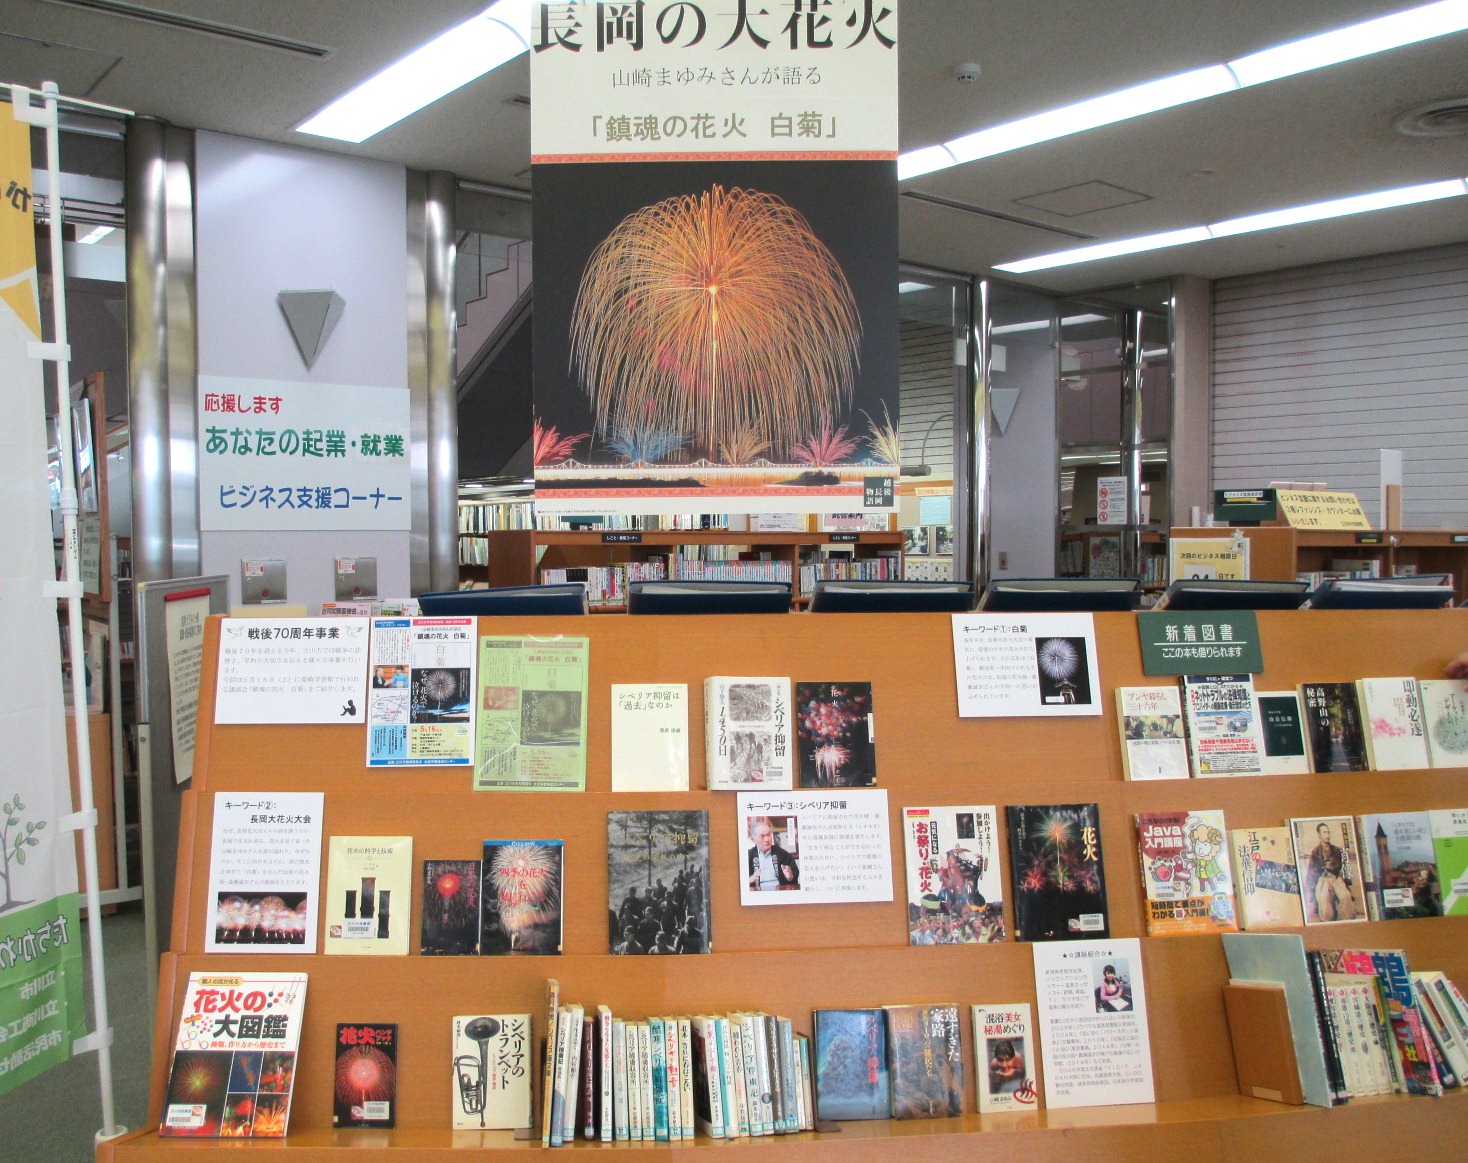 立川市中央図書館展示.JPG